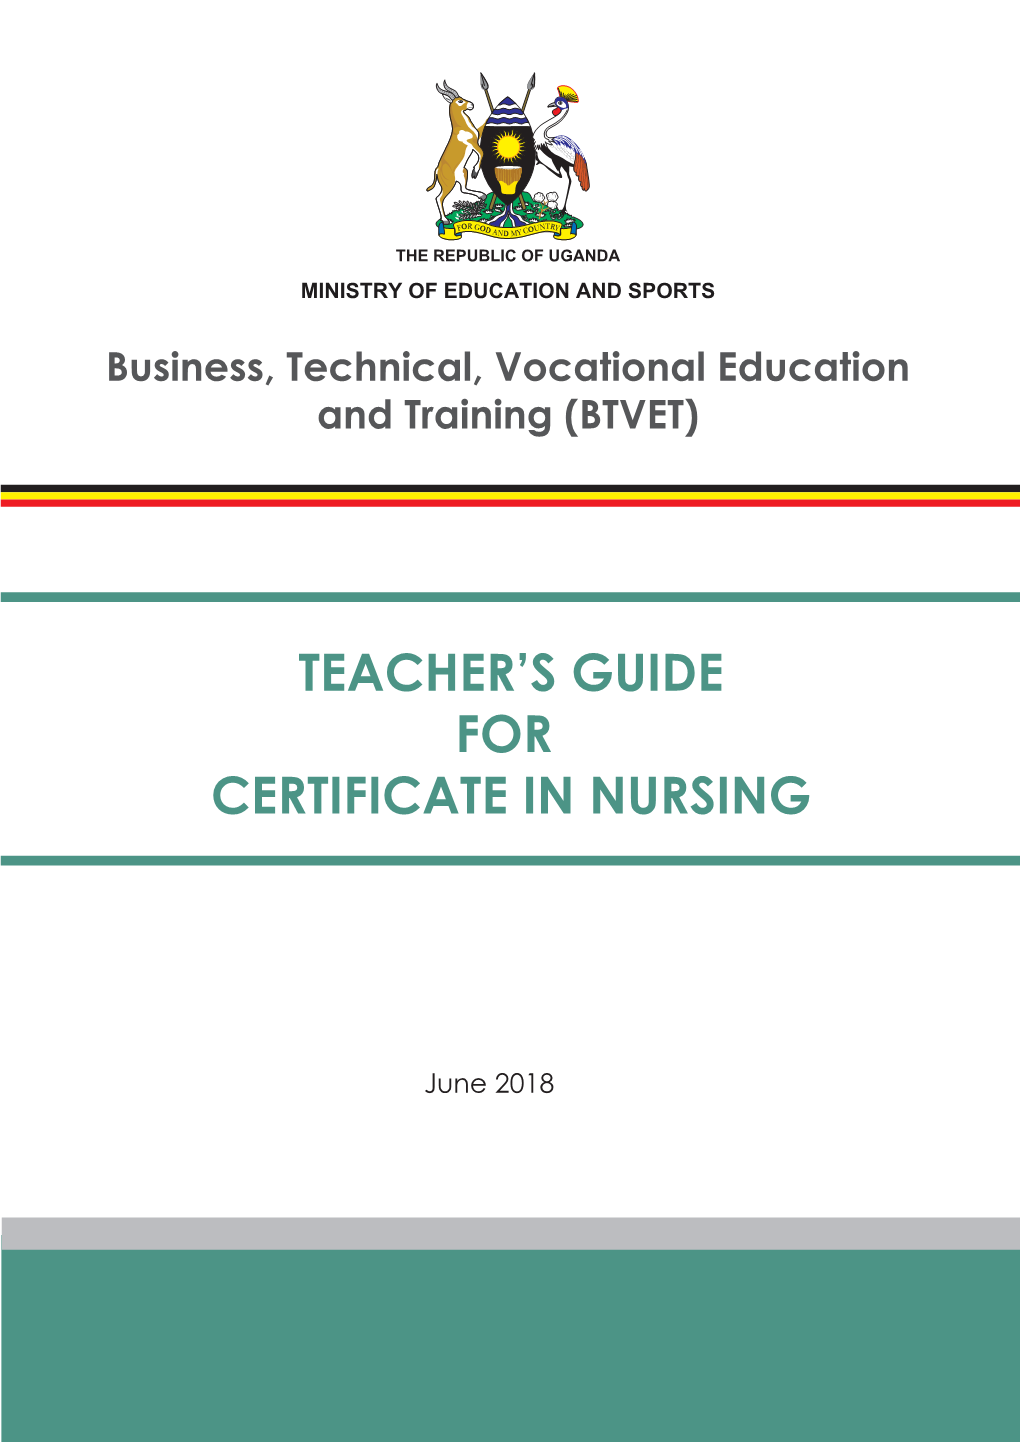 Teacher's Guide for Certificate in Nursing